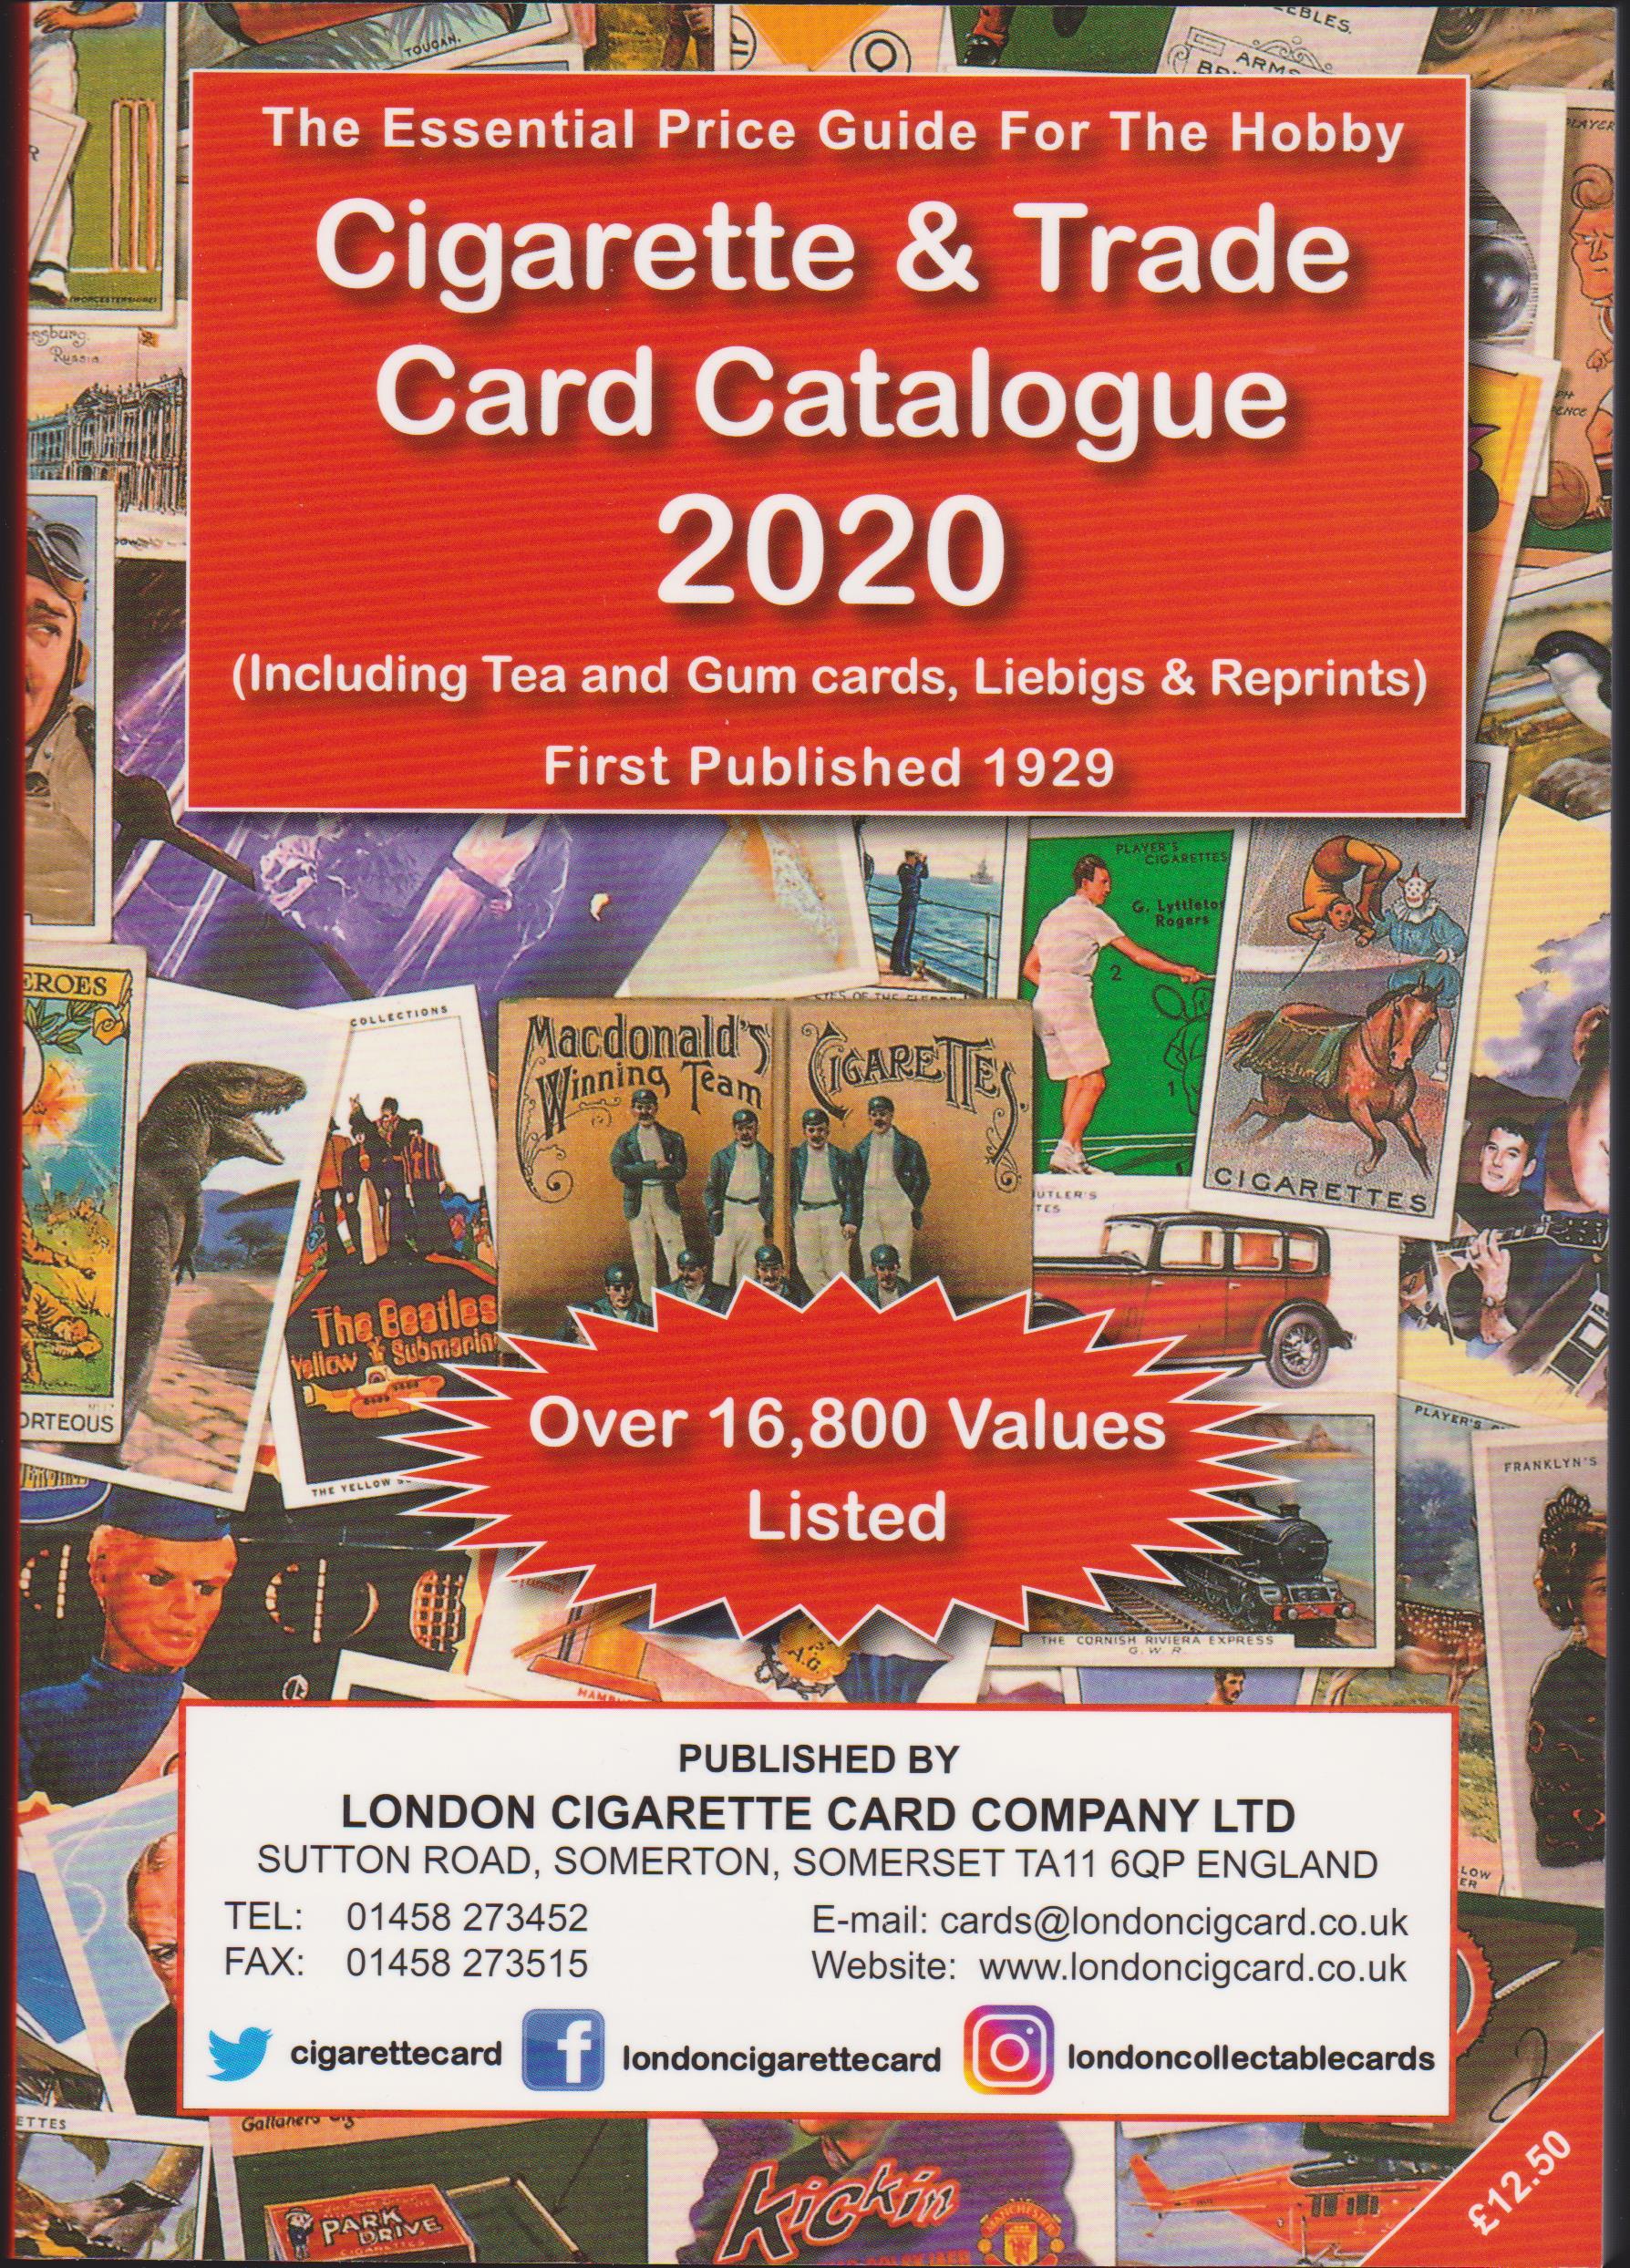 "L.C.C. Cigarette & Trade Card Catalogue 2020"